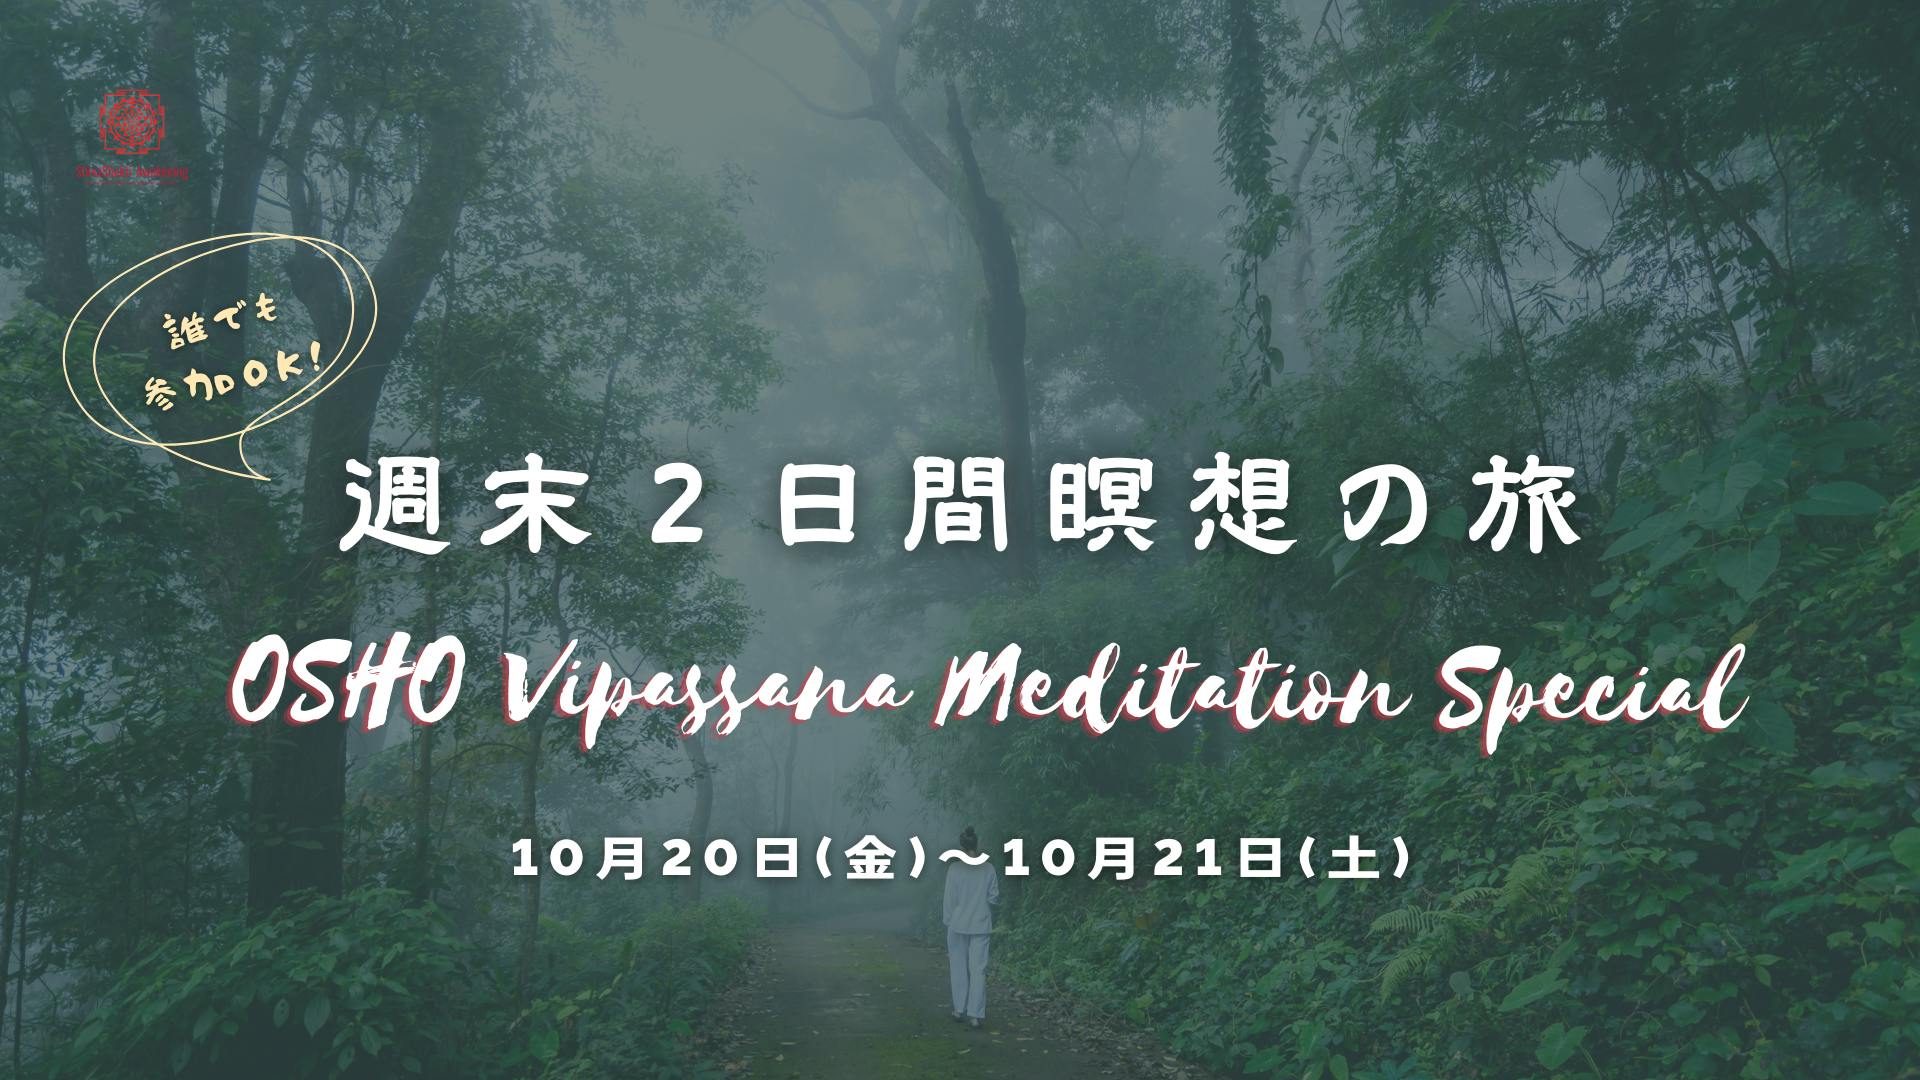 Osho Vipassana Meditation Special